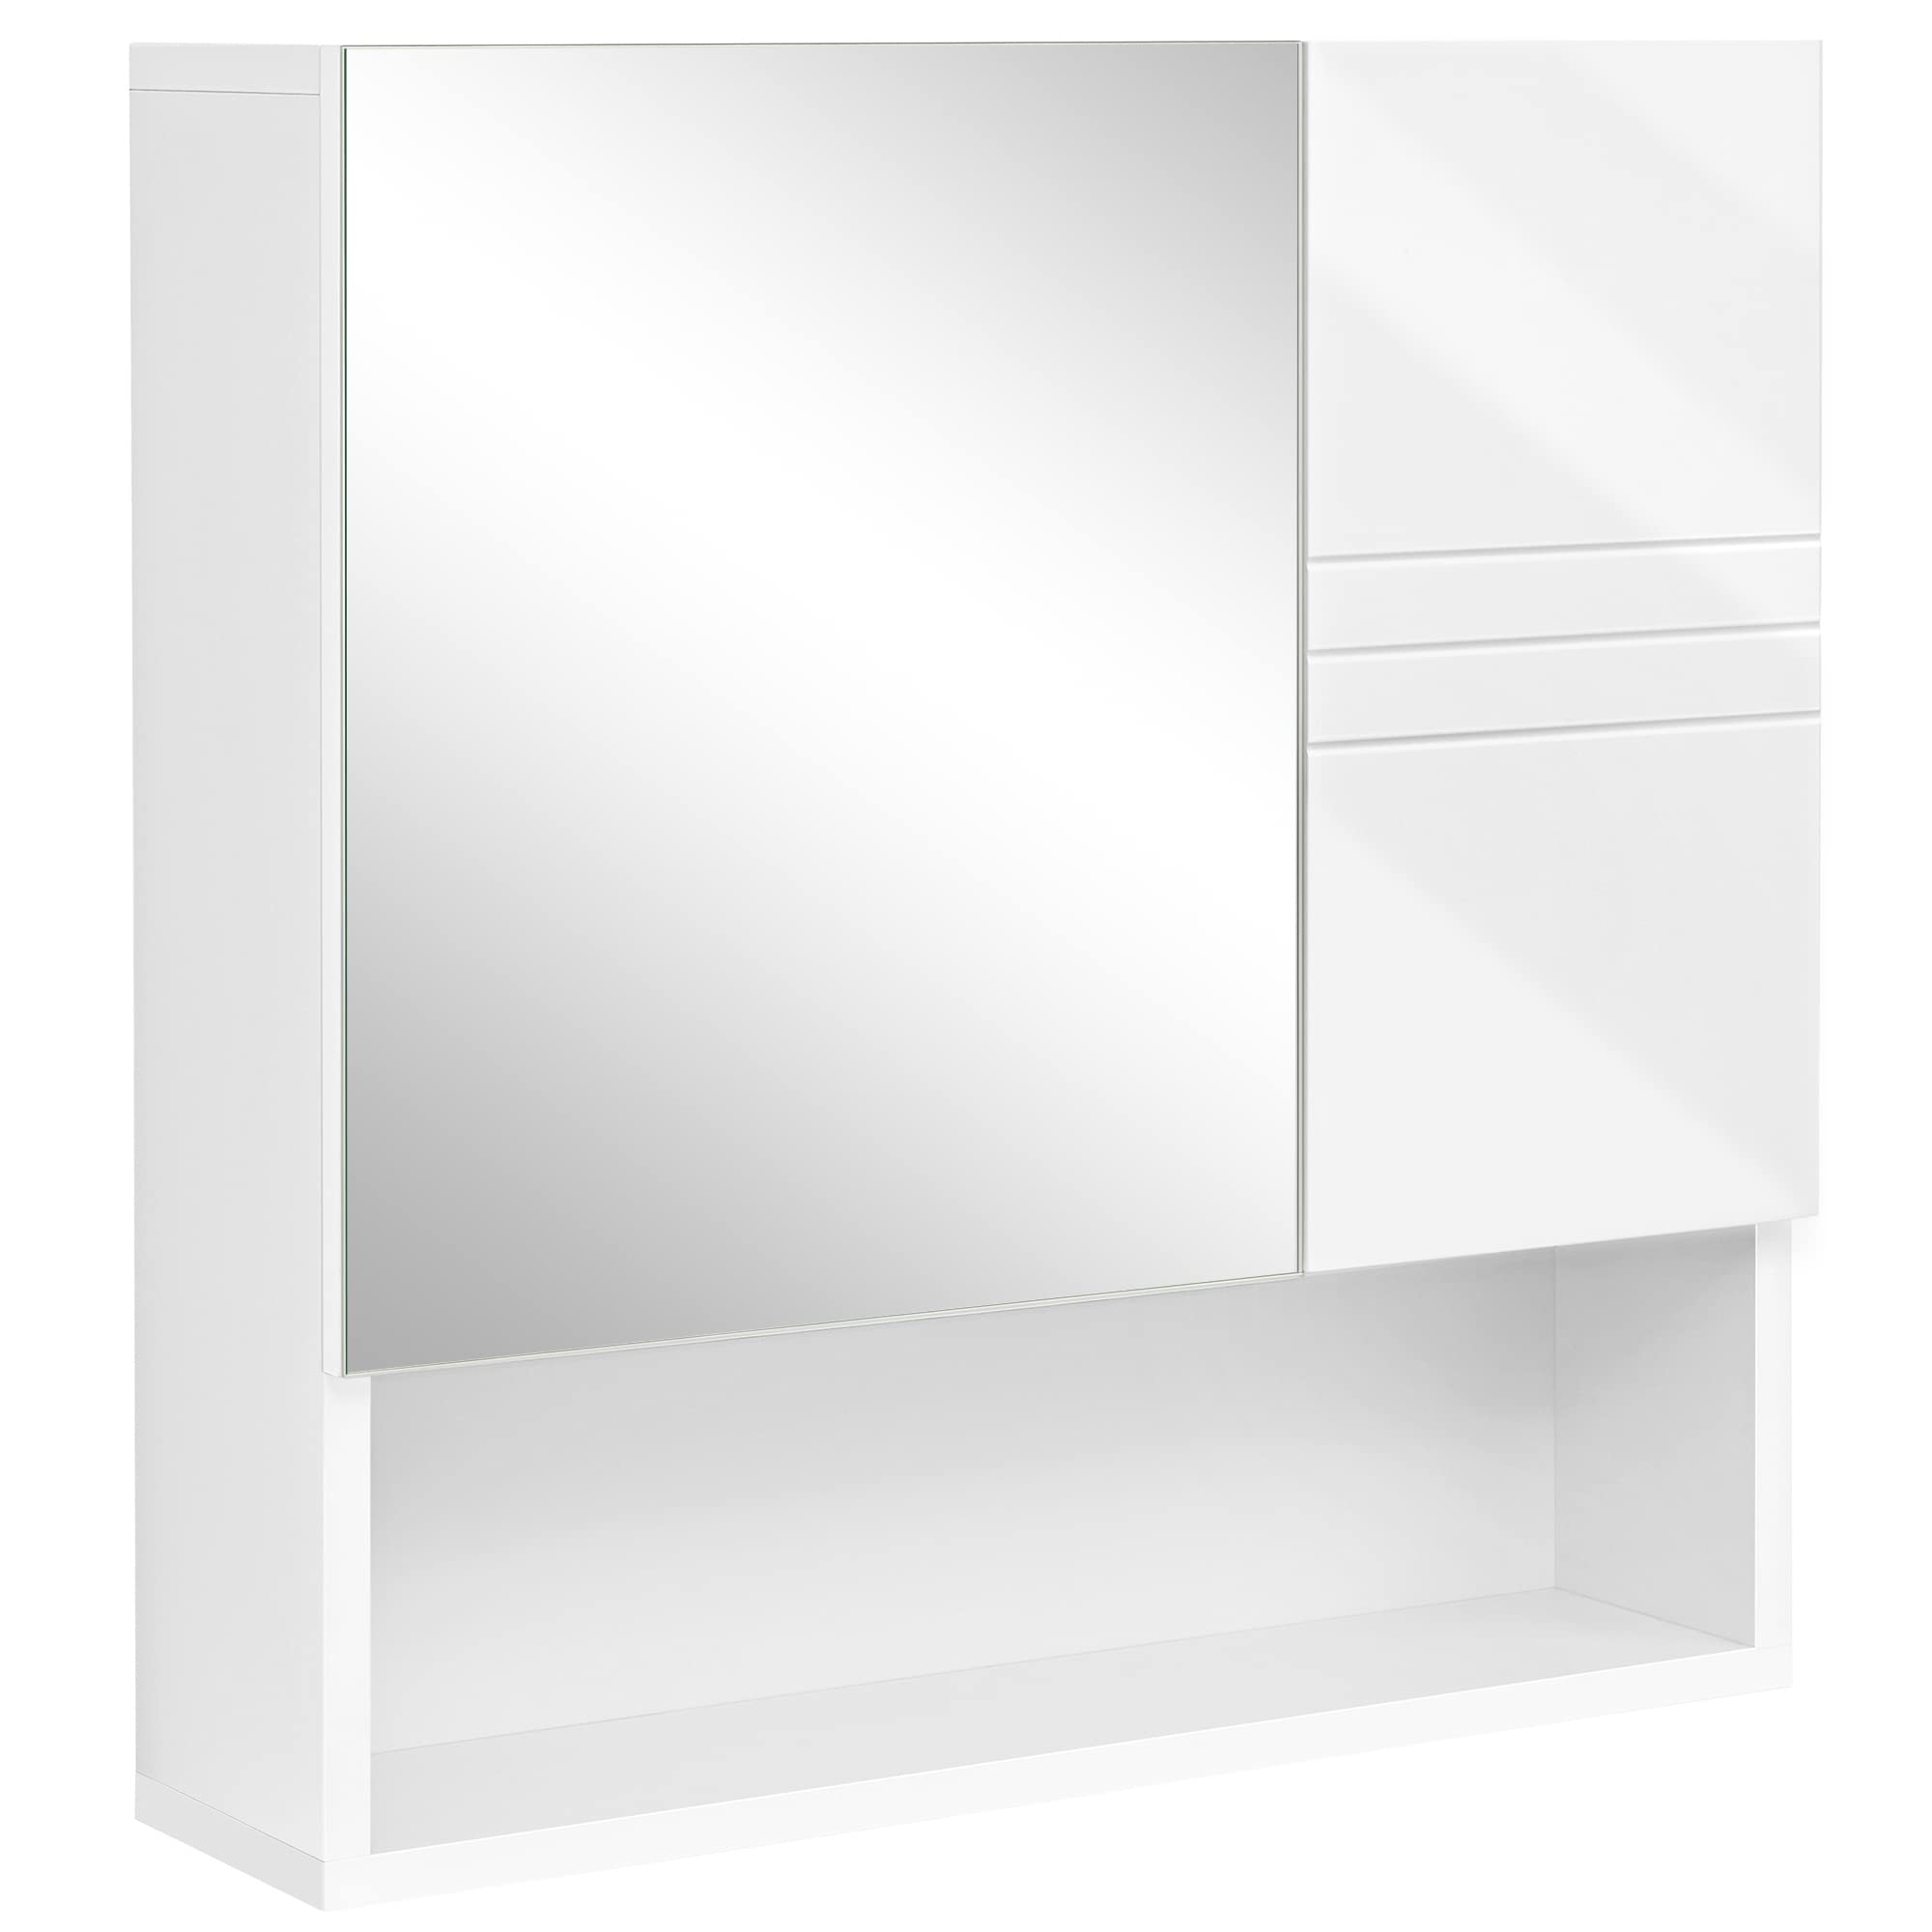 VASAGLE Spiegelschrank, Wandschrank, Badschrank mit höhenverstellbaren Regalebenen, Tür und Oberplatte mit Hochglanz Oberfläche, Badezimmer, 54 x 15 x 55 cm, weiß BBK122W01